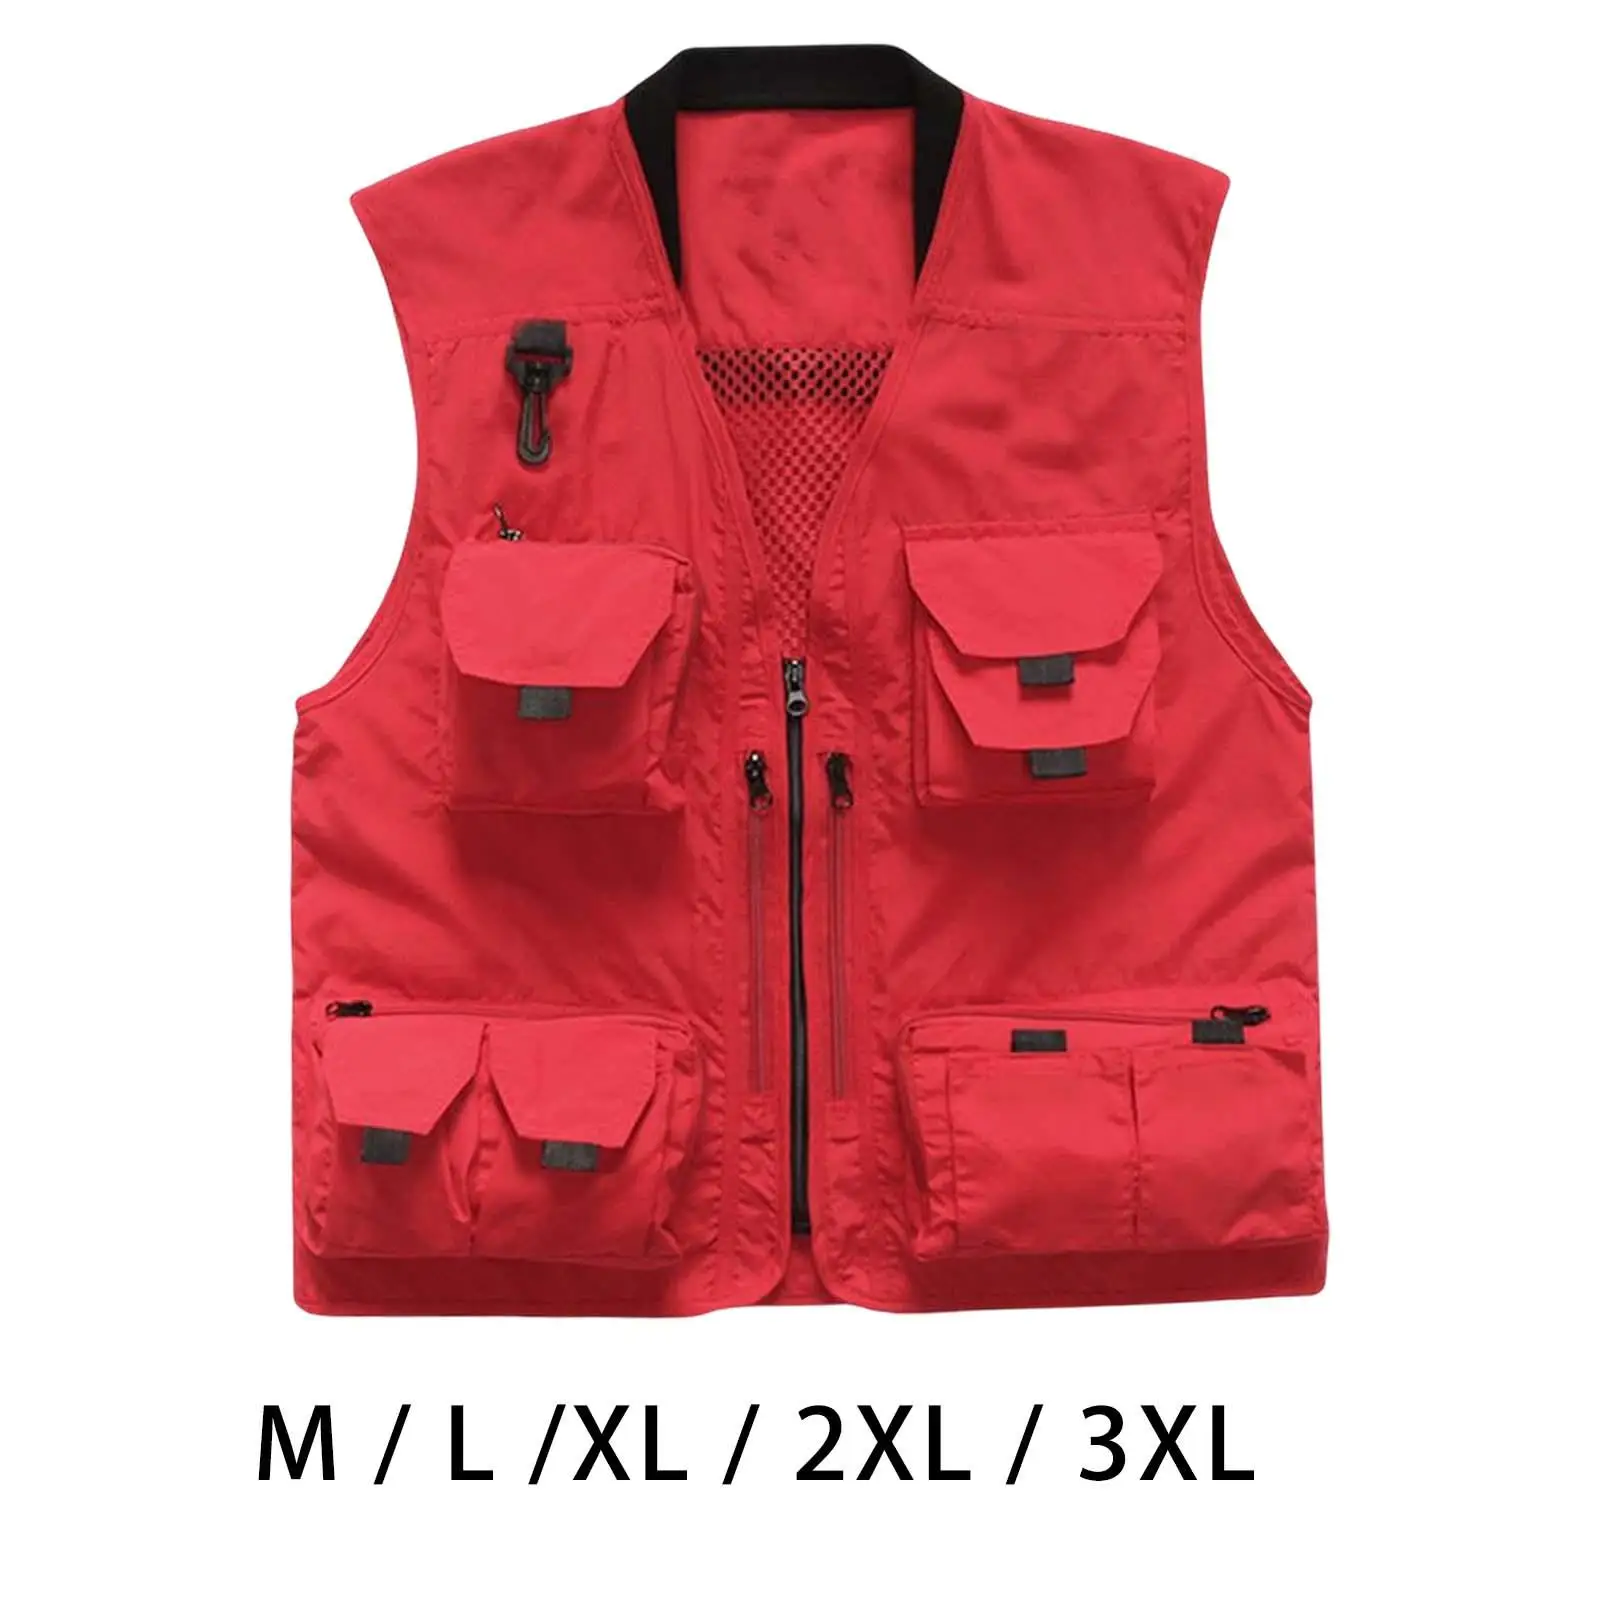 Casual Fishing Vest Waistcoat Zipper Jacket for Outdoor Activities Travel Camping Work